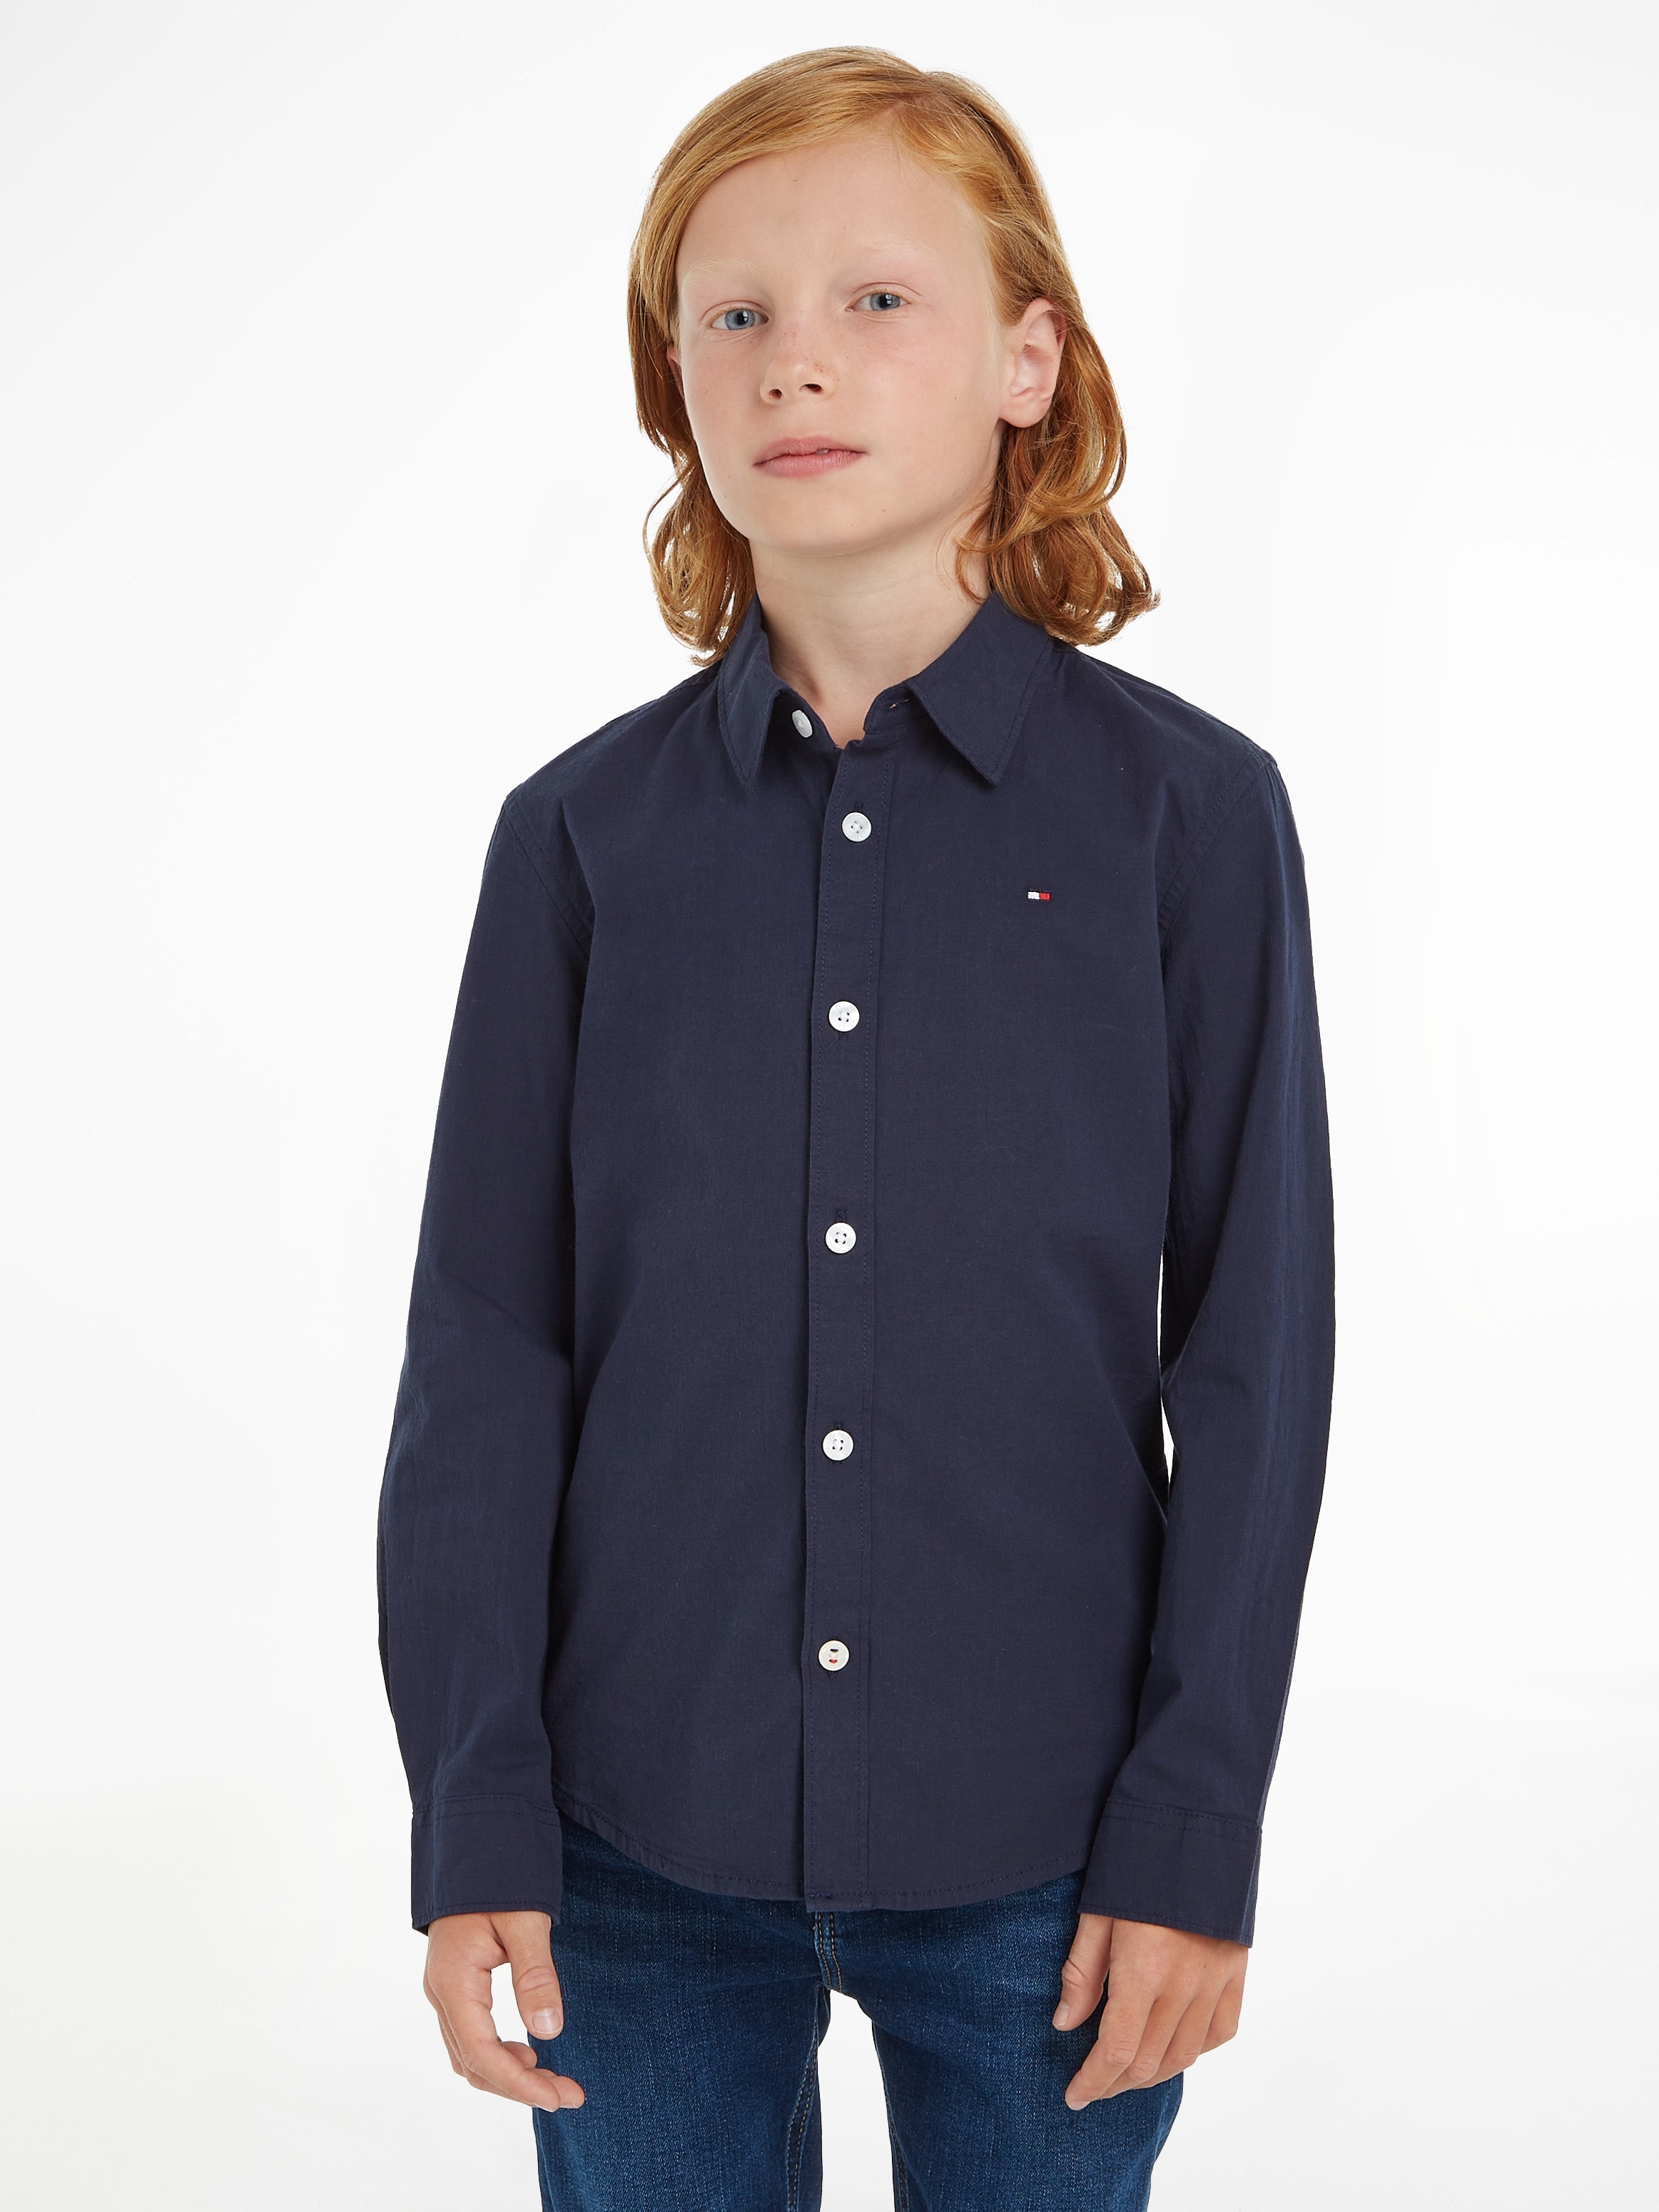 Tommy Hilfiger Langarmhemd STRETCH SHIRT L/S«, »SOLID MiniMe,für Junior Kinder Jungen POPLIN bestellen bei Kids OTTO